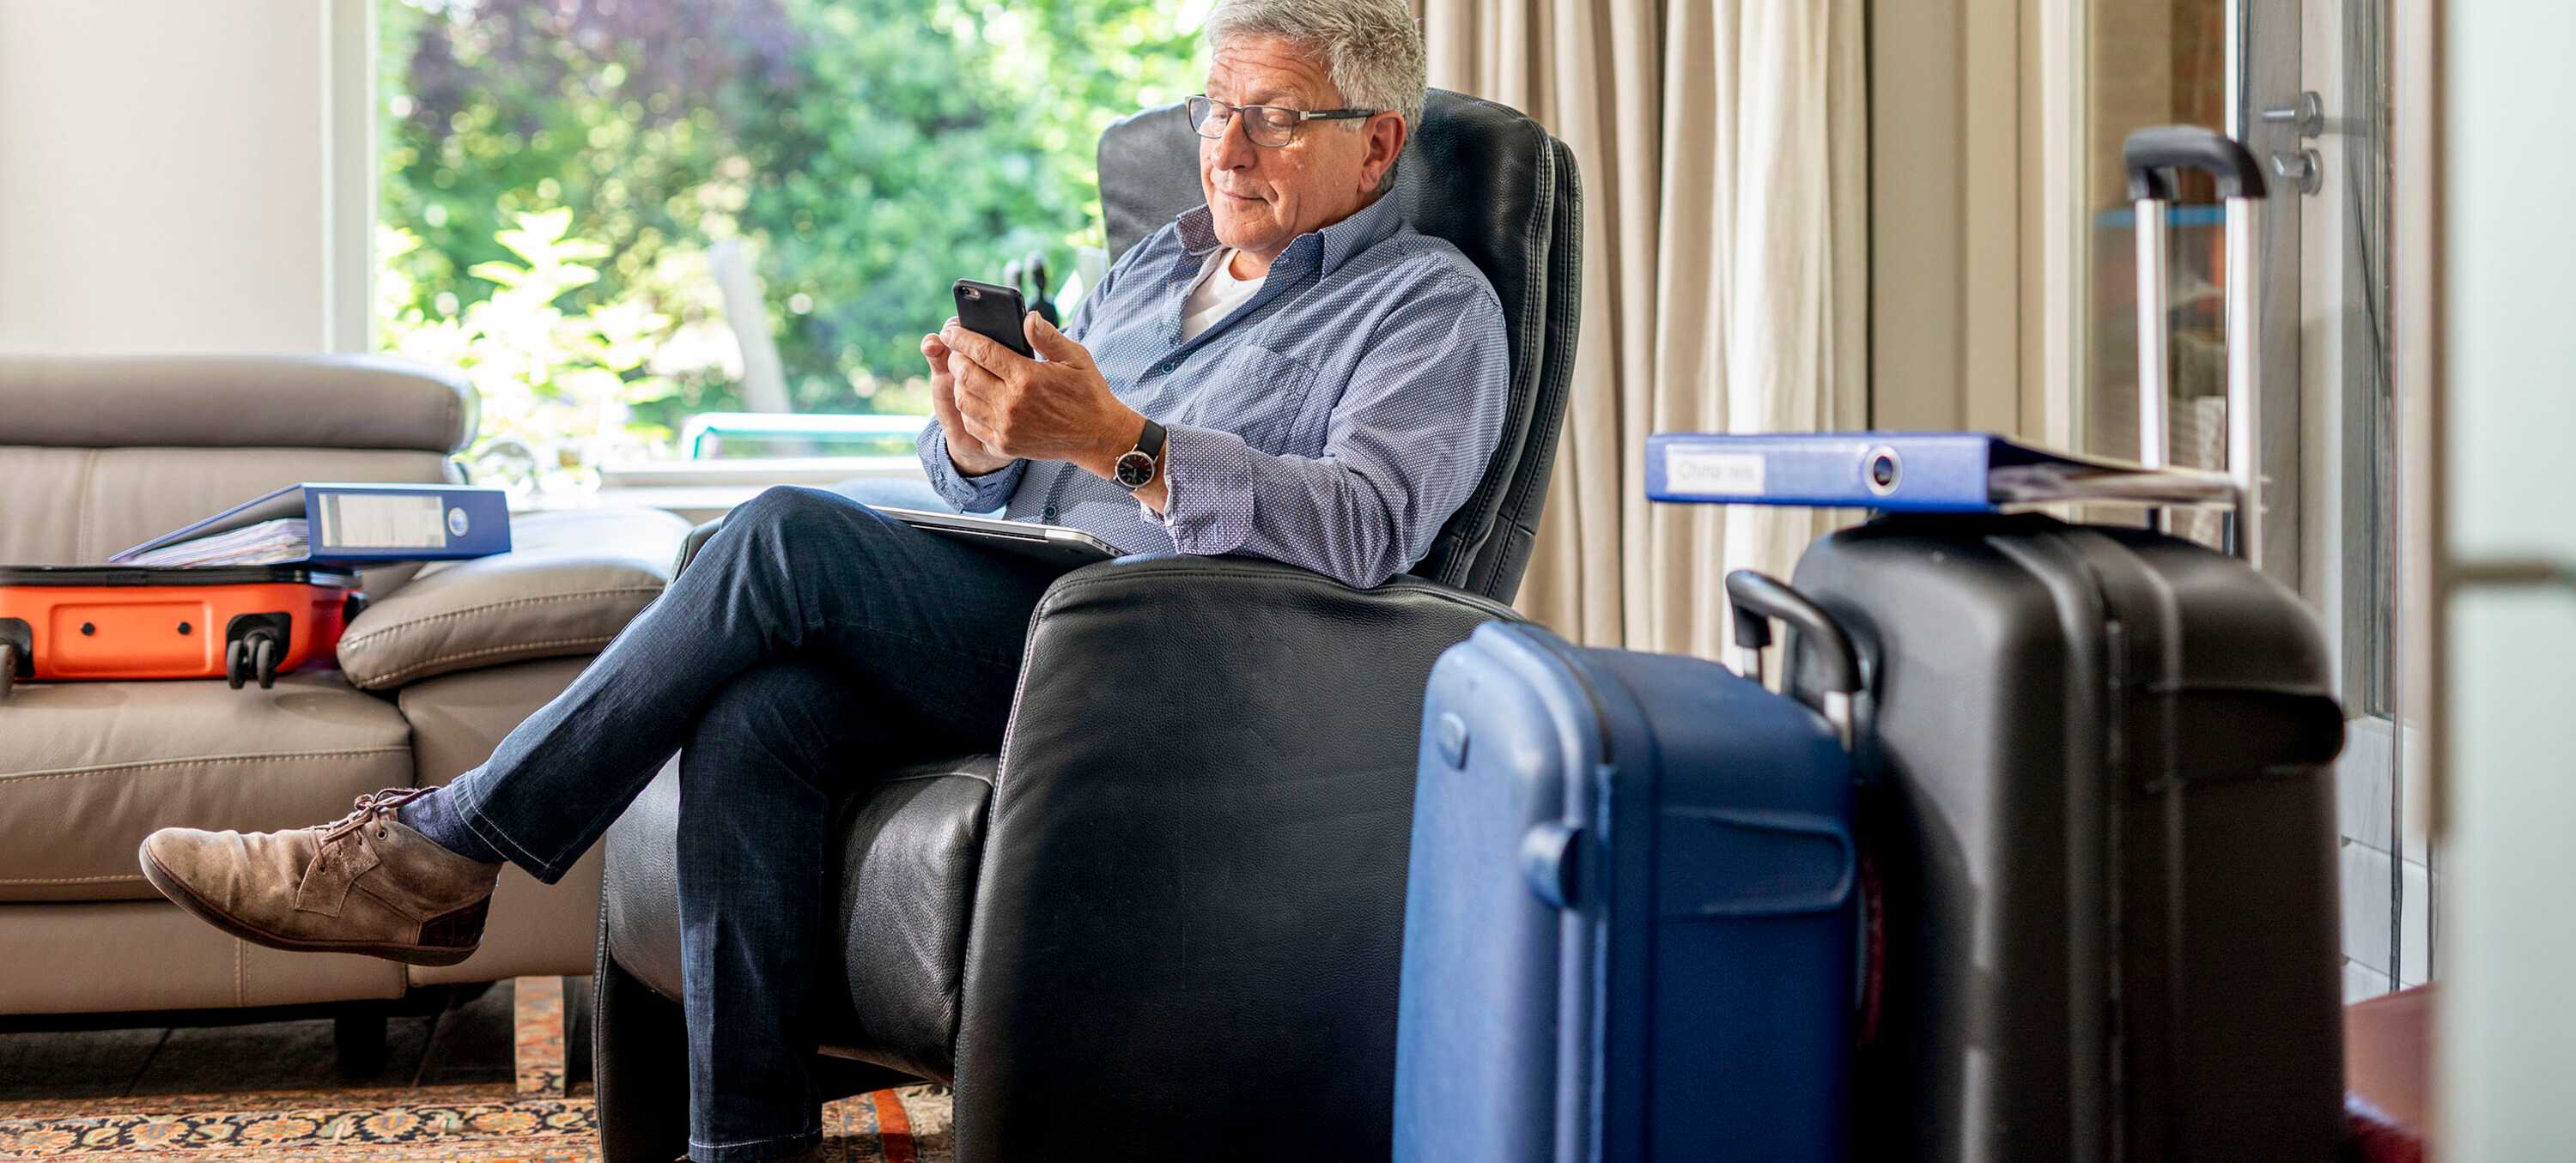 Man op stoel met smartphone. Koffers staan naast hem. 